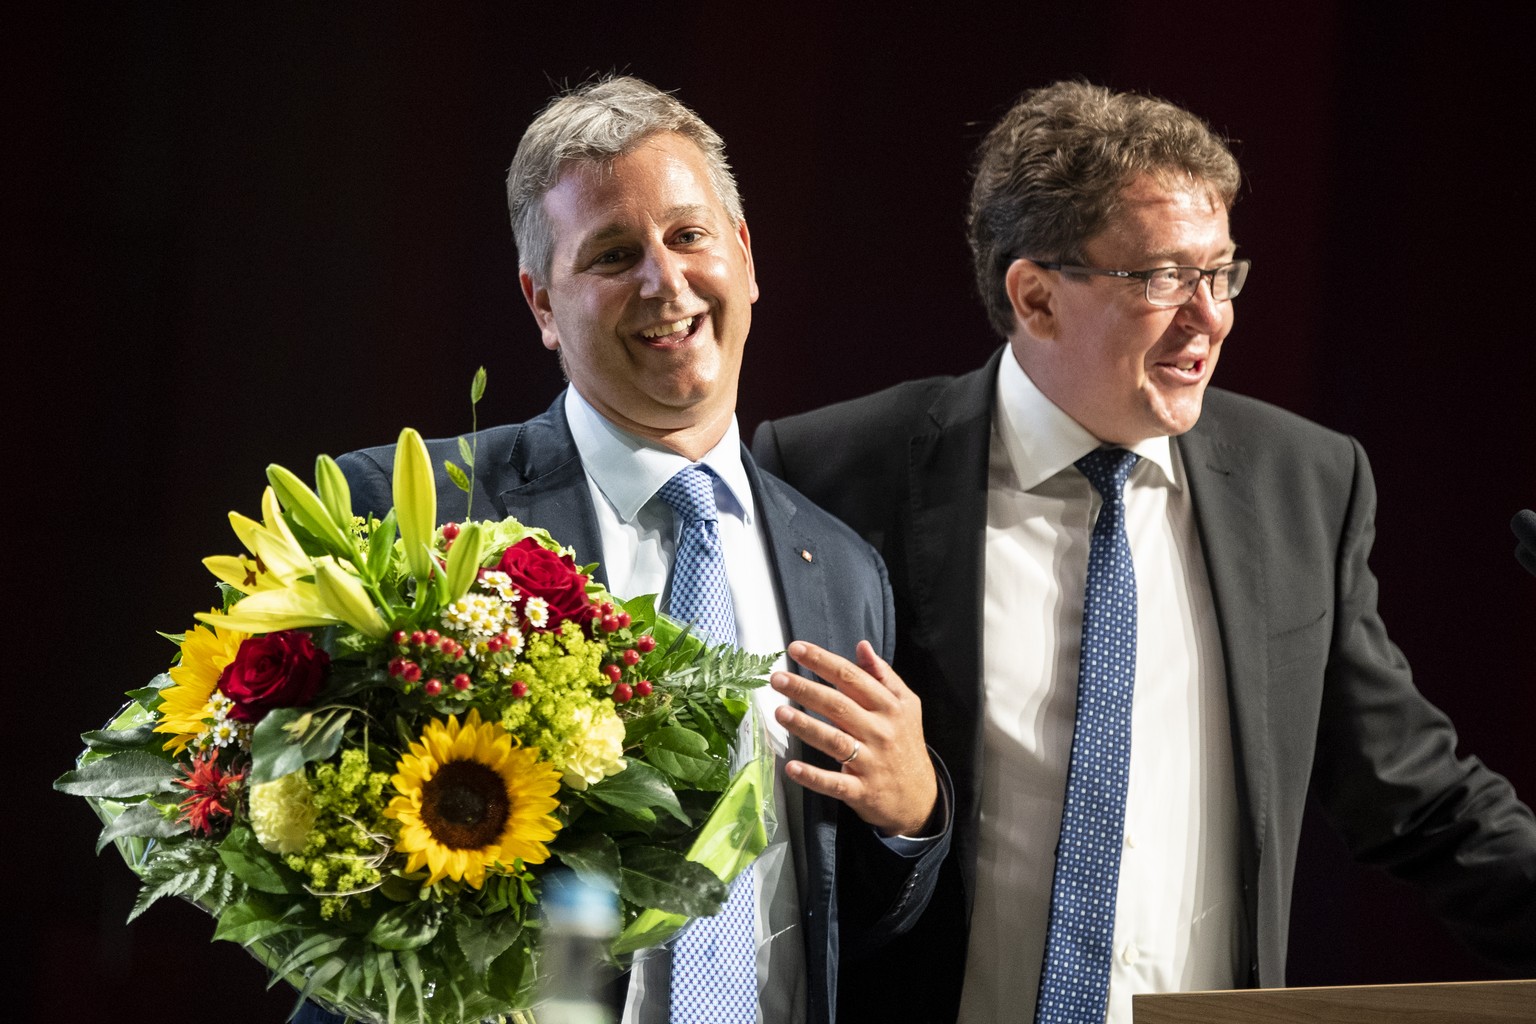 Der neue Parteipraesident Marco Chiesa, links, spricht neben Albert Roesti an der Delegiertenversammlung der SVP Schweiz am Samtag, 22. August 2020 in Brugg Windisch. (KEYSTONE/Ennio Leanza)